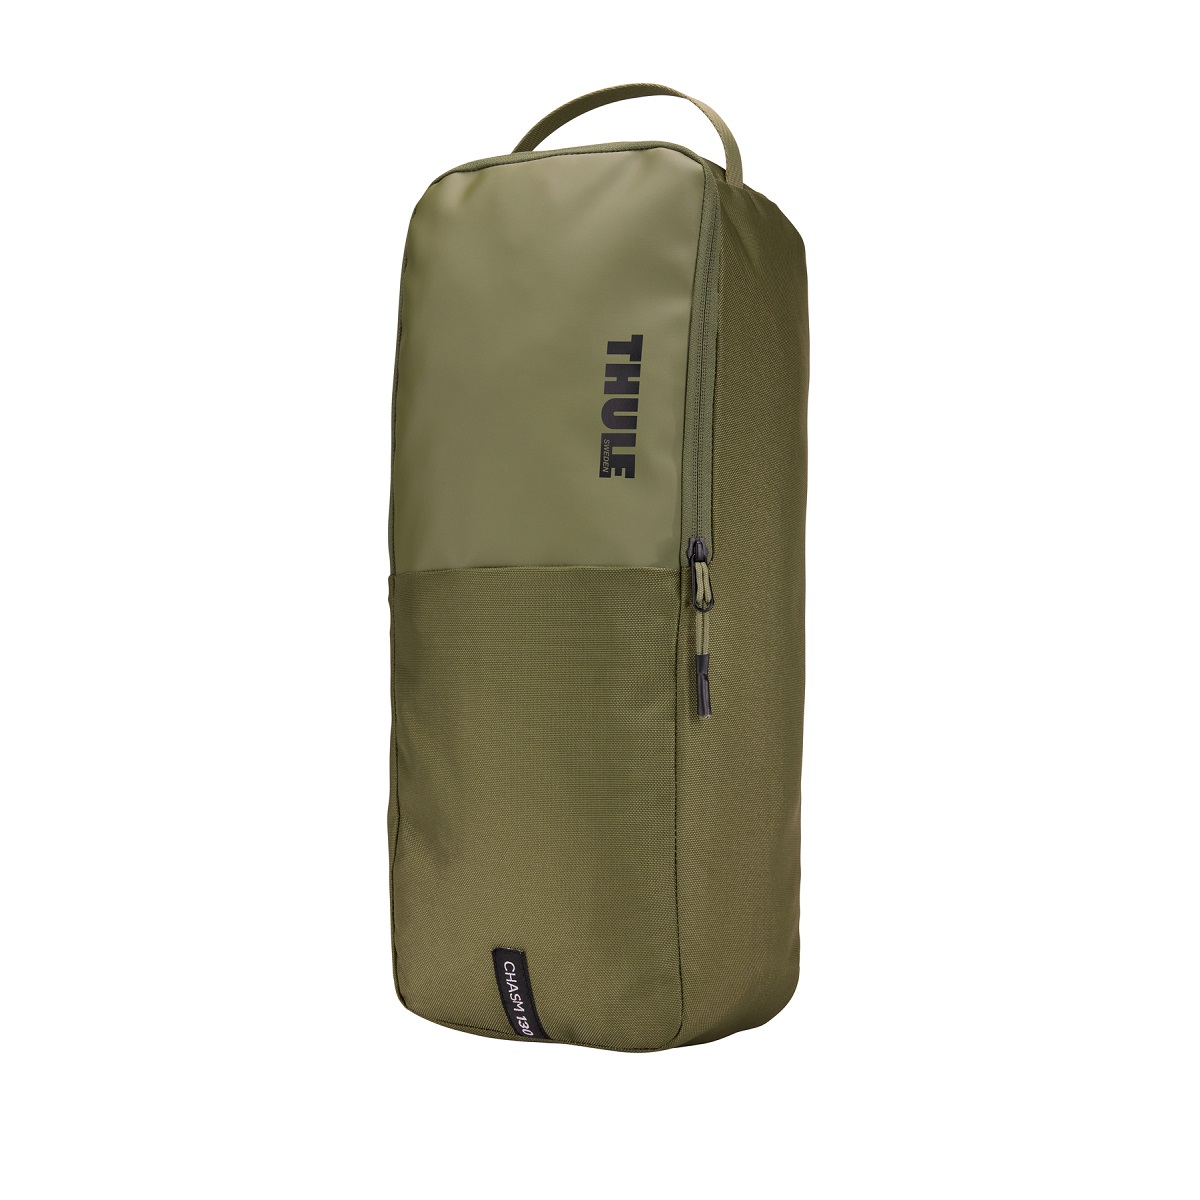 Sportska/putna torba i ruksak 2u1 Thule Chasm 130 L - maslinastozelena